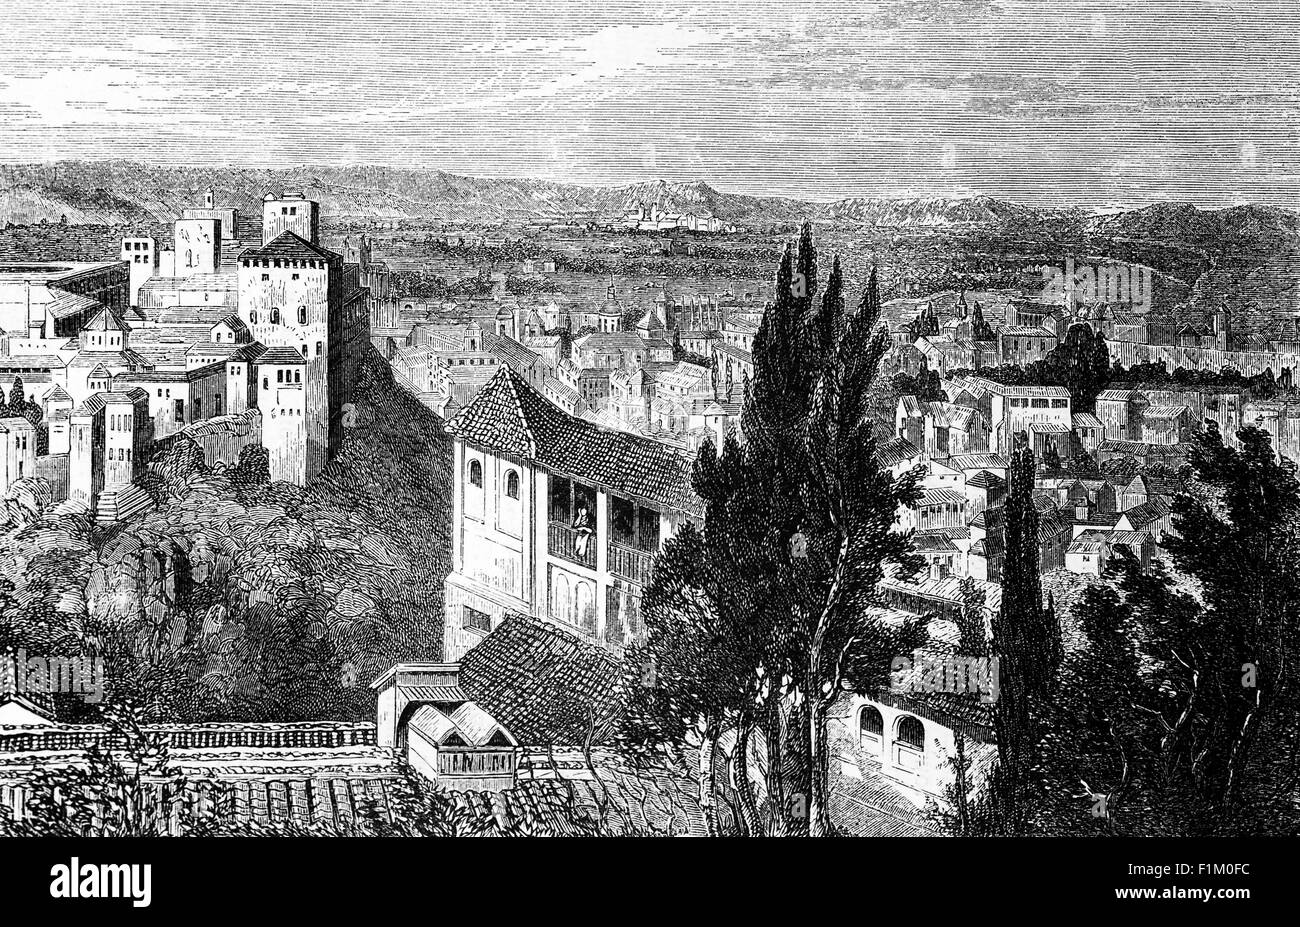 Eine Luftaufnahme von Granada aus dem 19. Jahrhundert mit der Alhambra, der arabischen Zitadelle und dem Palast. Die Hauptstadt der Provinz Granada, in Andalusien, Spanien, liegt am Fuße der Sierra Nevada, am Zusammenfluss von vier Flüssen, dem Darro, dem Genil, dem Monachil und dem Beiro. Stockfoto